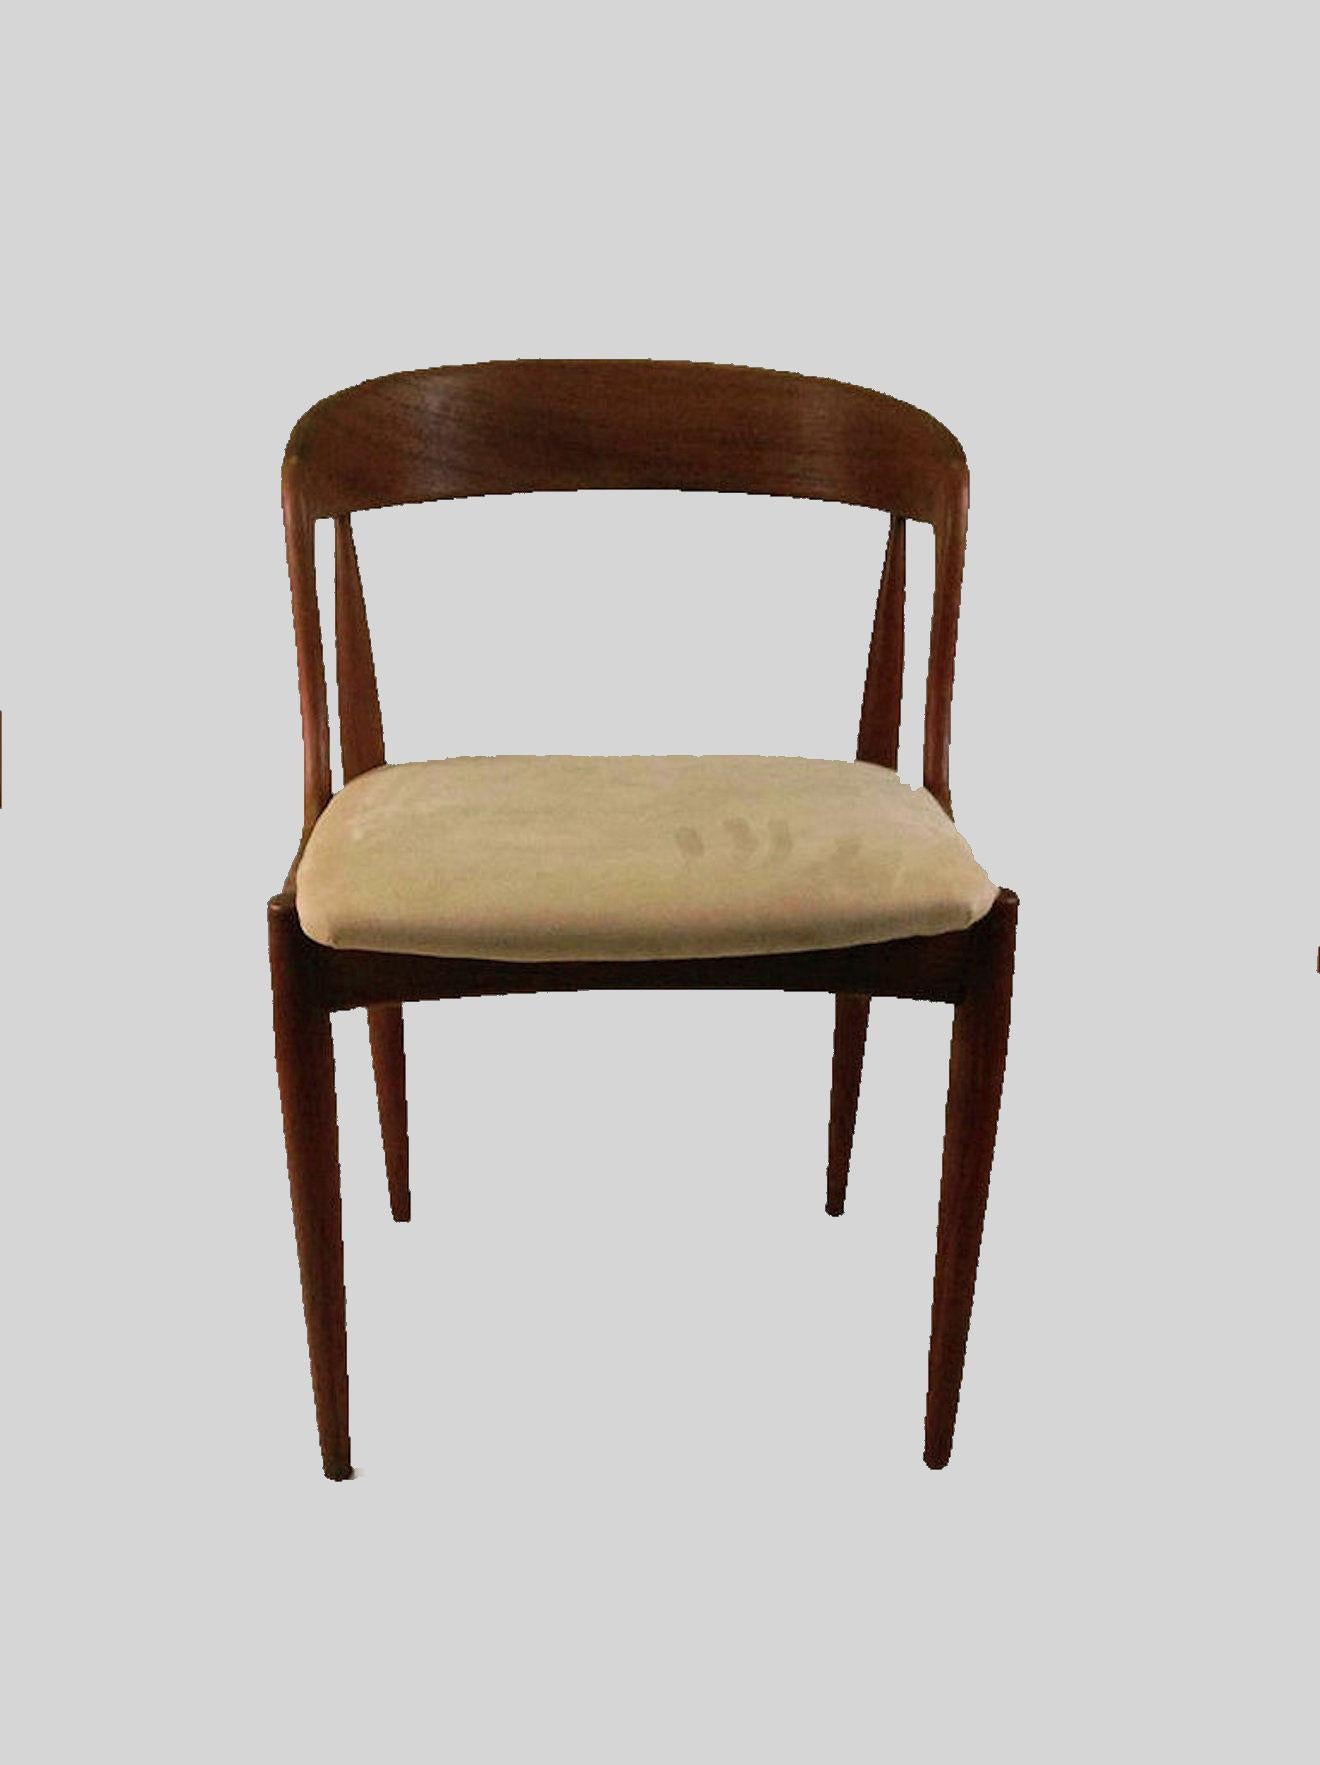 Satz von acht vollständig restaurierten, organisch geformten Esszimmerstühlen aus Teakholz, entworfen von dem dänischen Designer Johannes Andersen für die Uldum Møbelfabrik im Jahr 1965.

Der bequeme Stuhl besteht aus einem soliden, sorgfältig